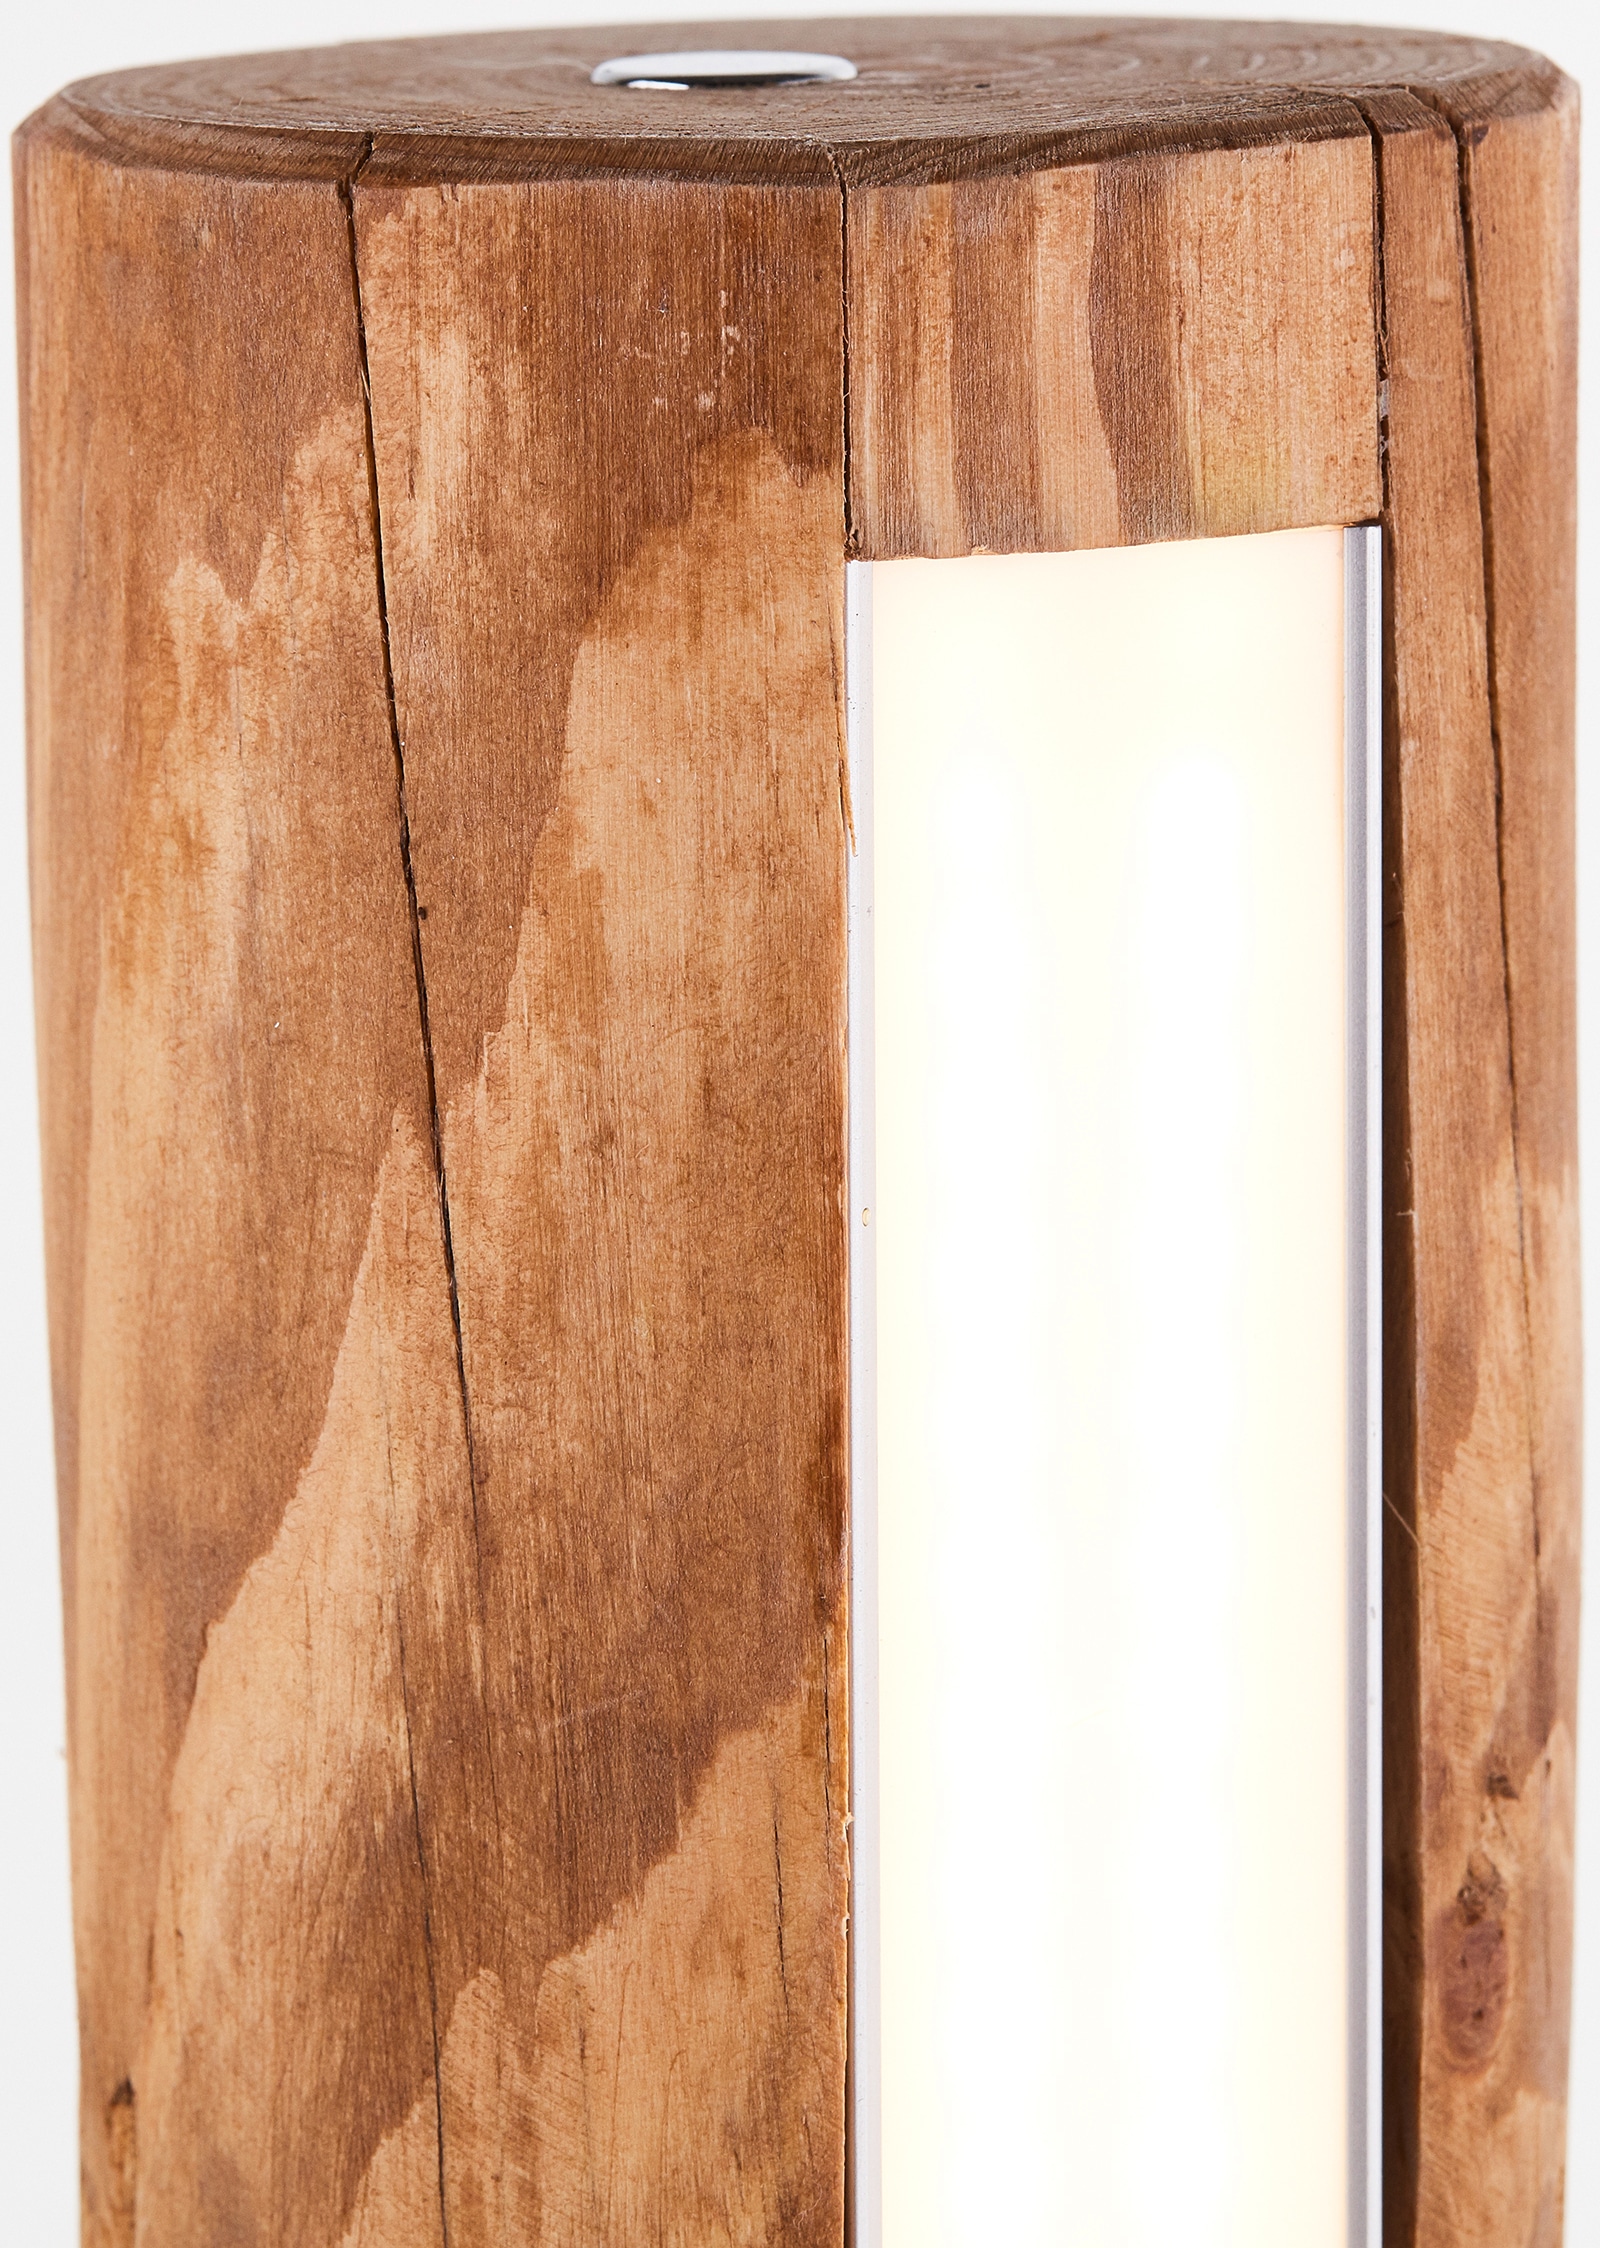 Brilliant LED Tischleuchte »Odun«, 1 flammig-flammig, 46 cm Höhe, Touchdimmer, 800 lm, warmweiß, Holz/Metall, kiefer gebeizt